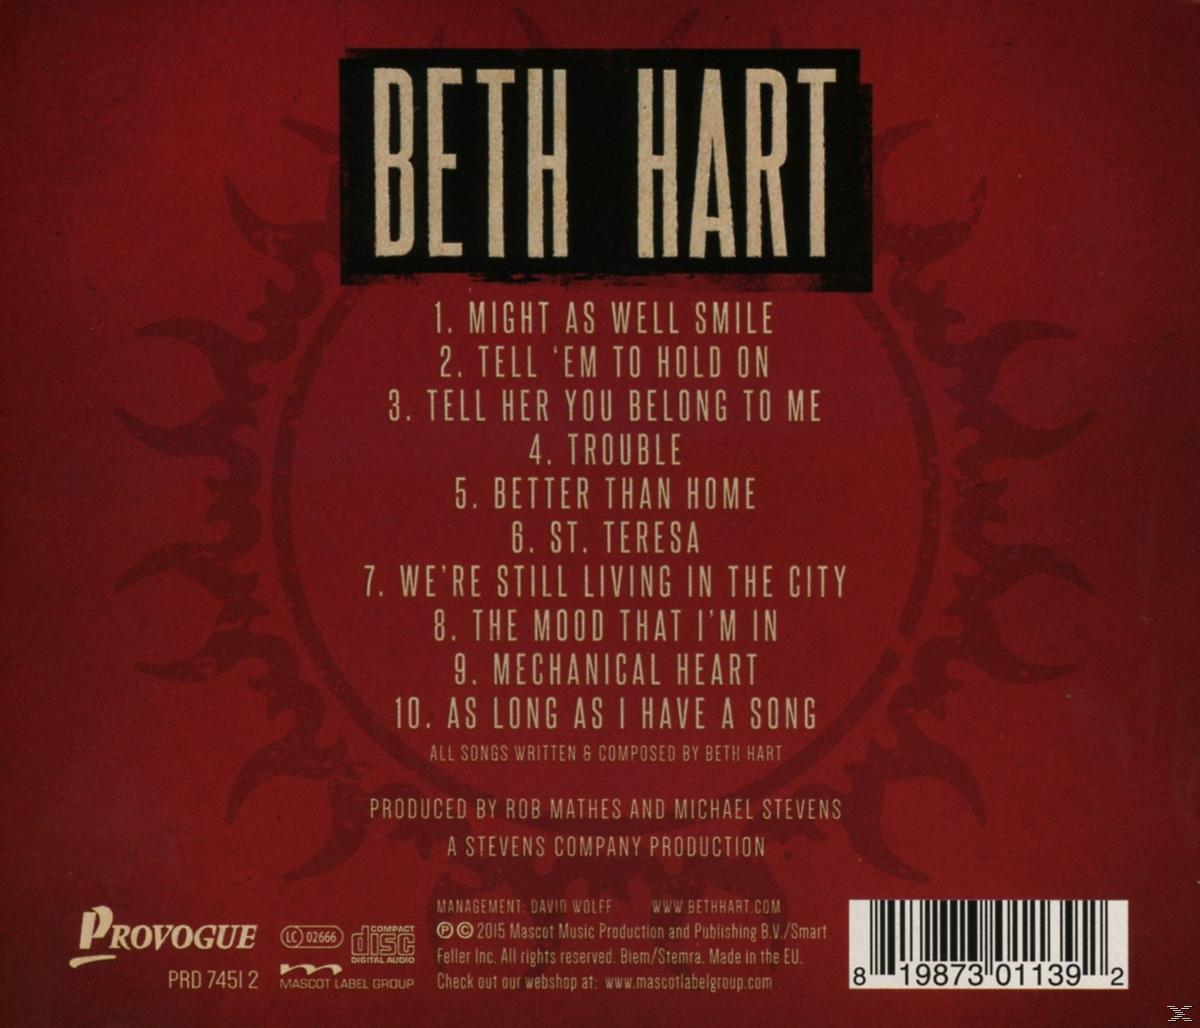 - Than Home Hart Beth Better (CD) -